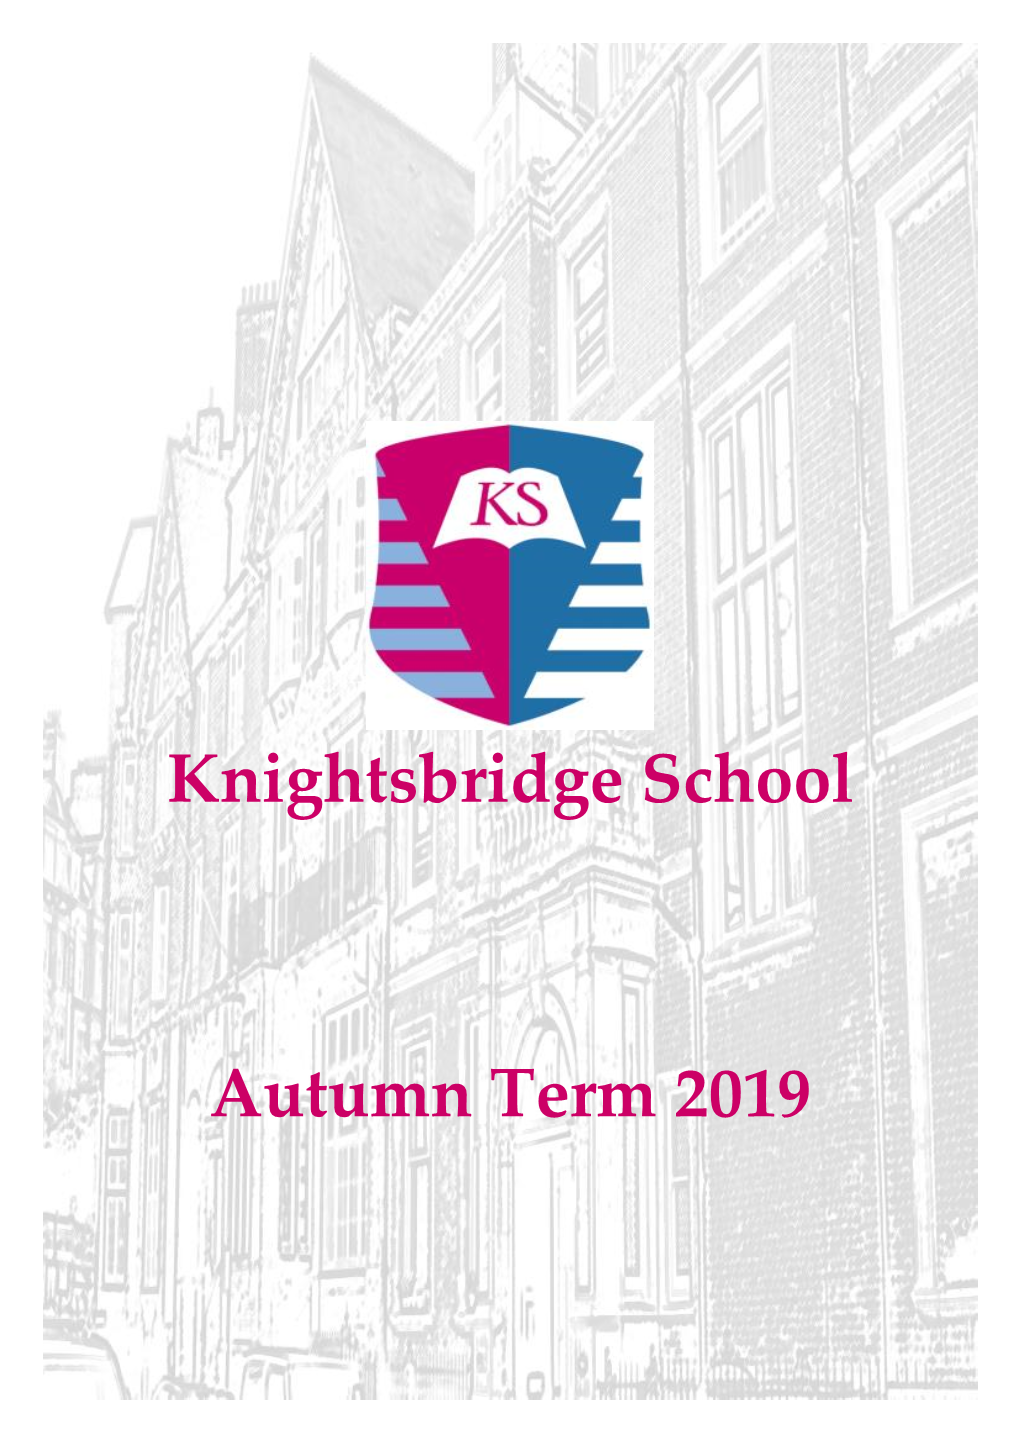 Knightsbridge School Autumn Term 2019